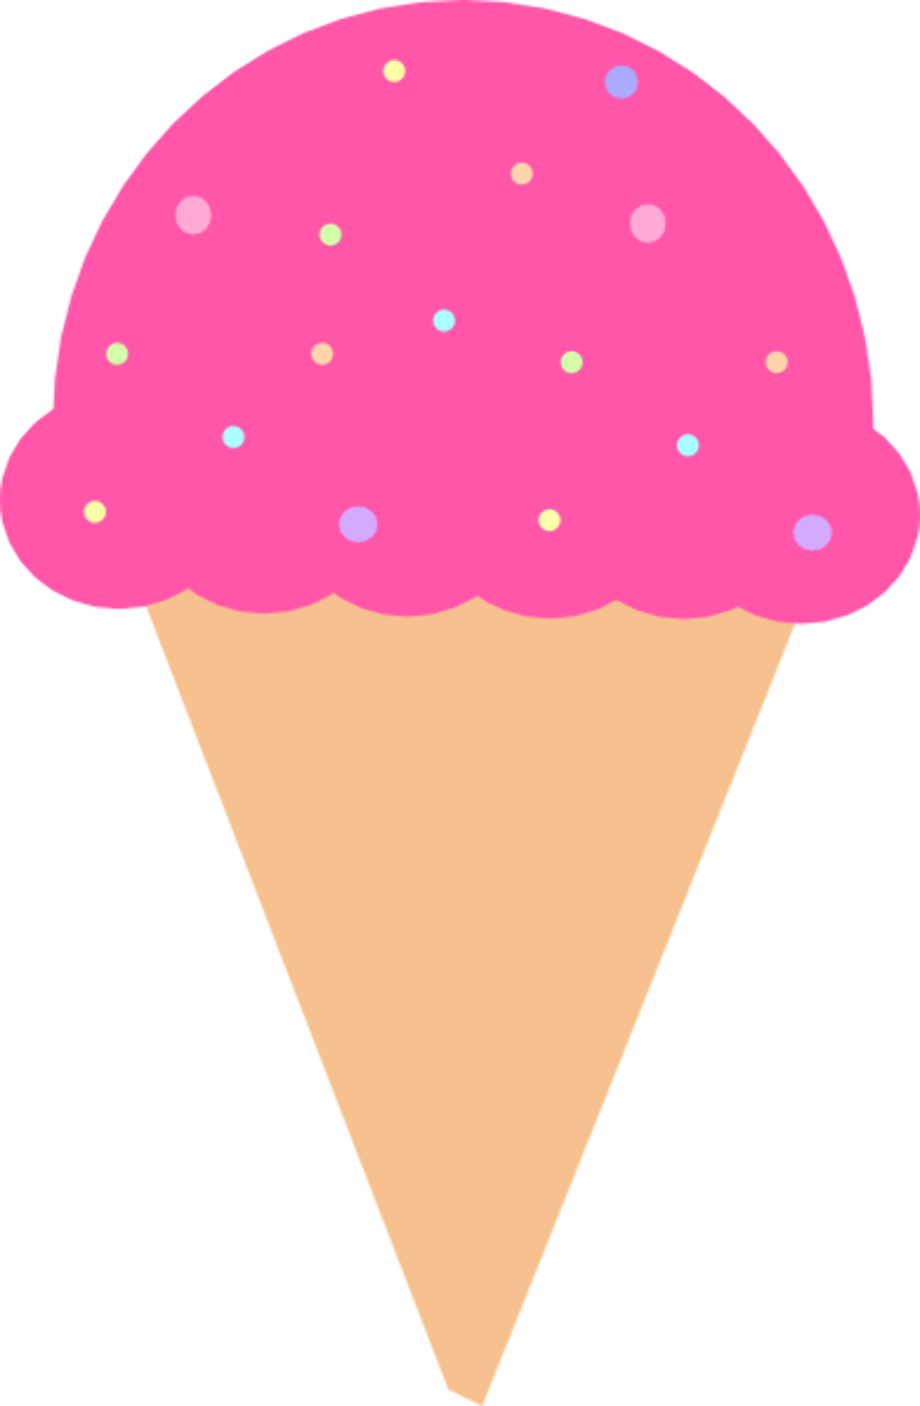 ice cream cone clipart small